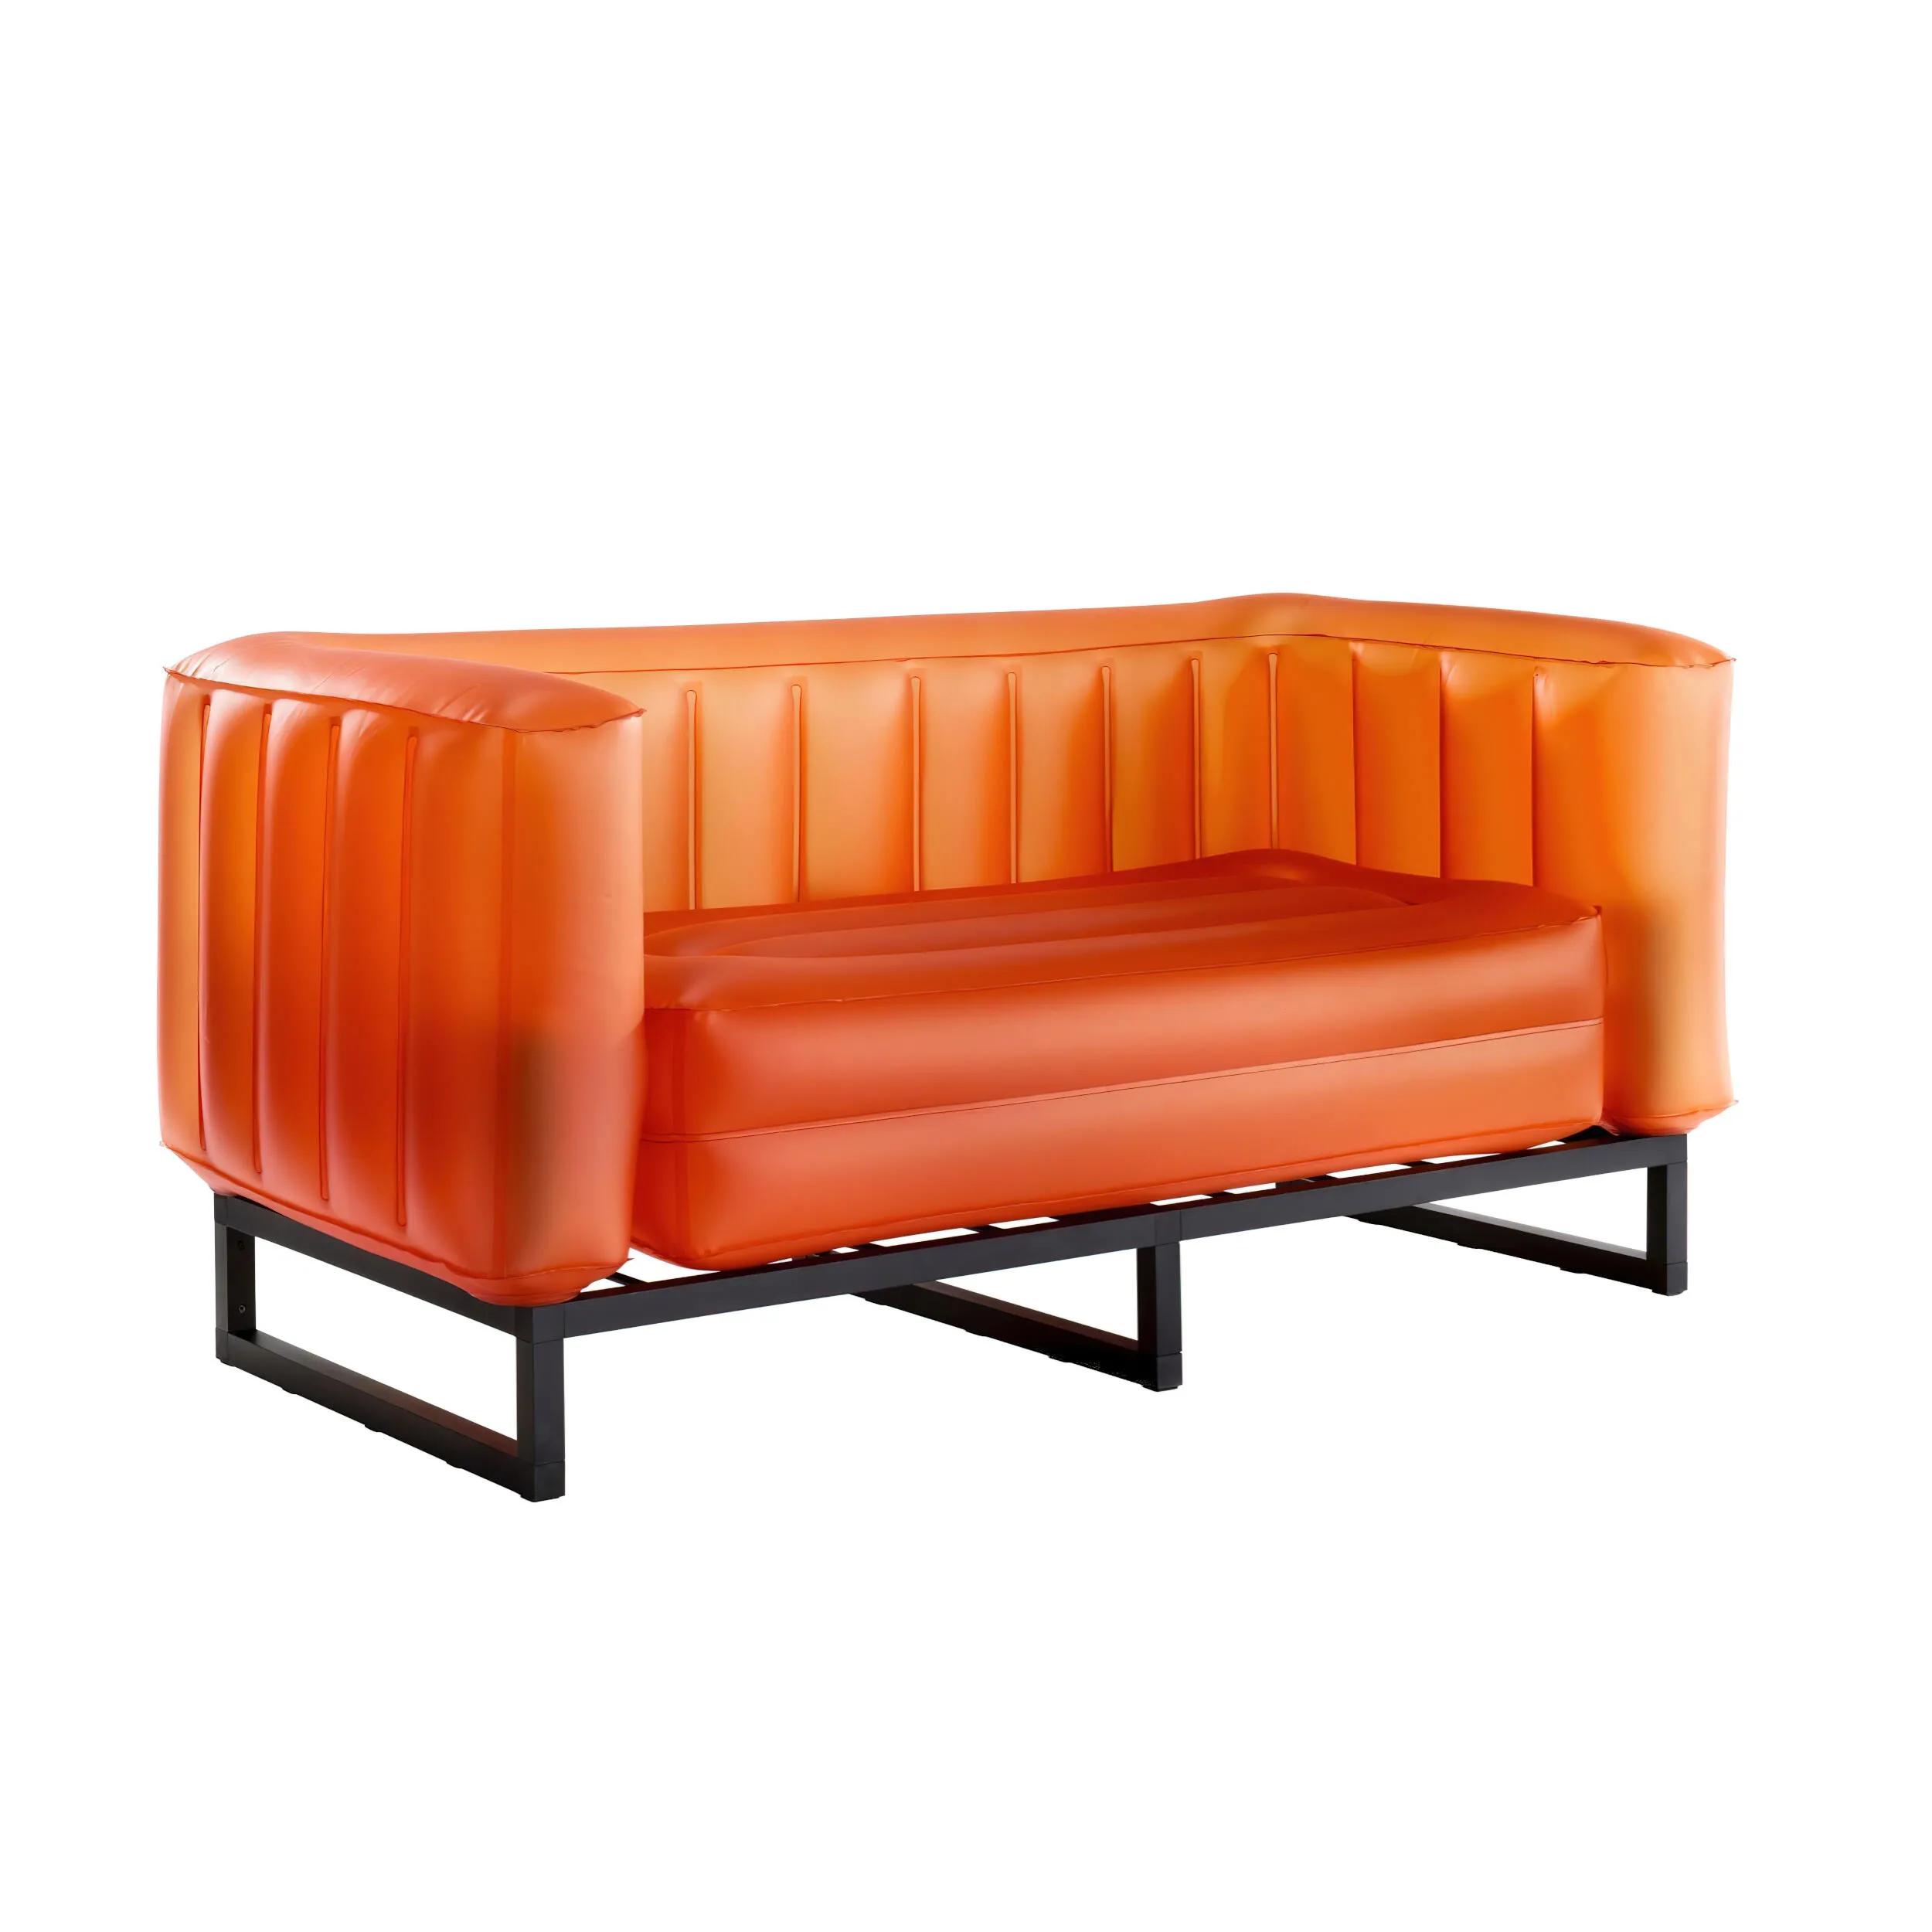 divano Yomi eko illuminato struttura in legno nero, dimensioni 76x151xH69 cm peso 14,8 kg, seduta gonfiabile in TPU colore arancio traslucido